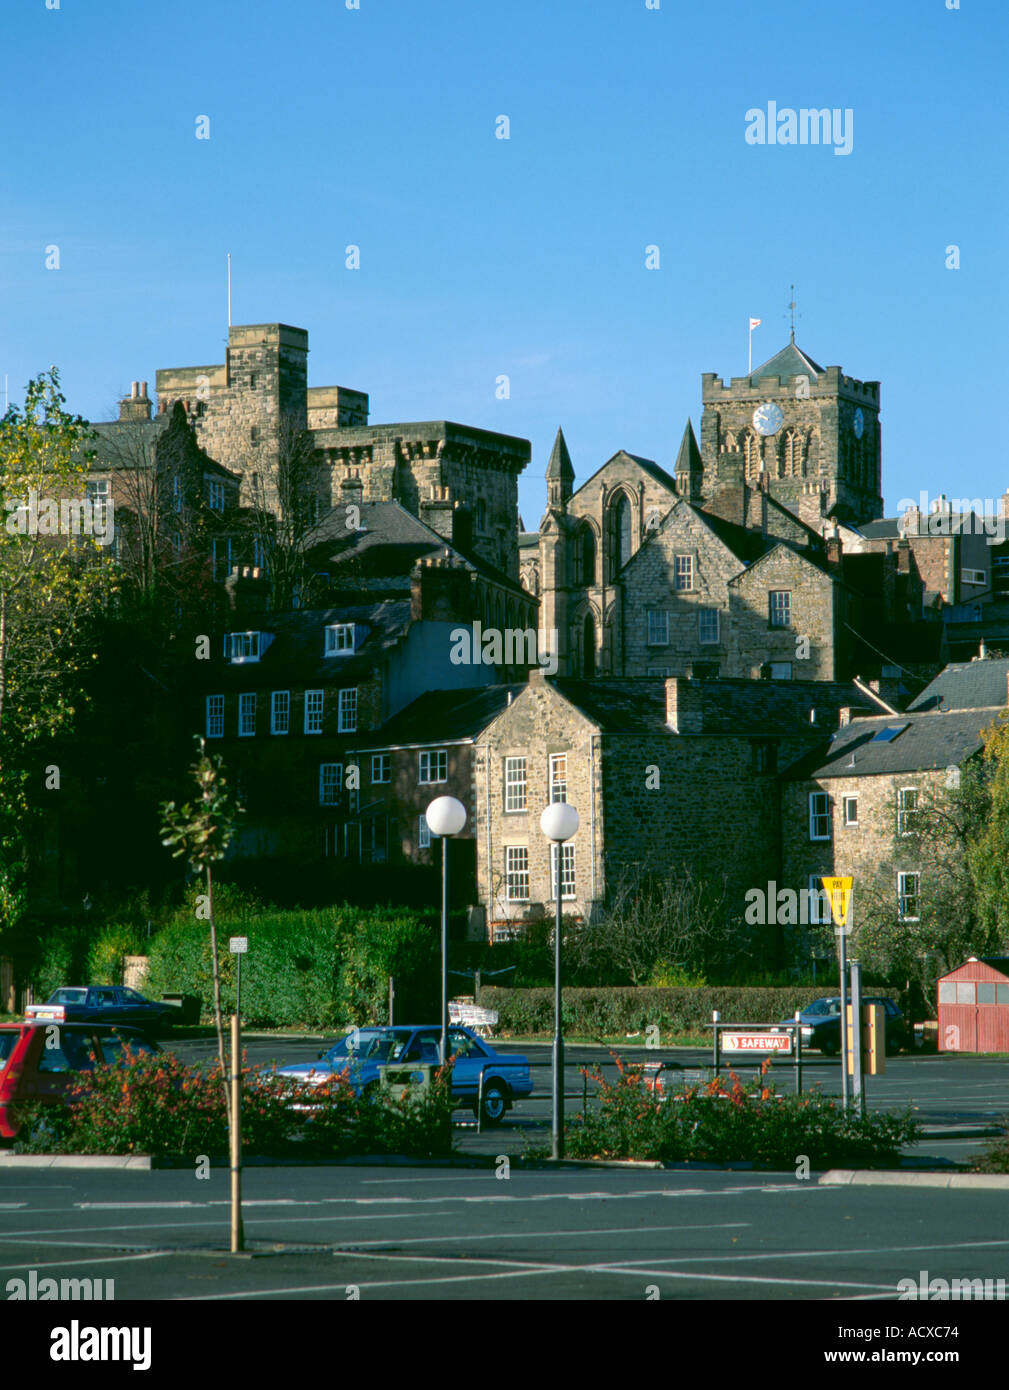 Moot Hall and east facade of Hexham Abbey, Hexham, Northumberland, England, UK. Stock Photo